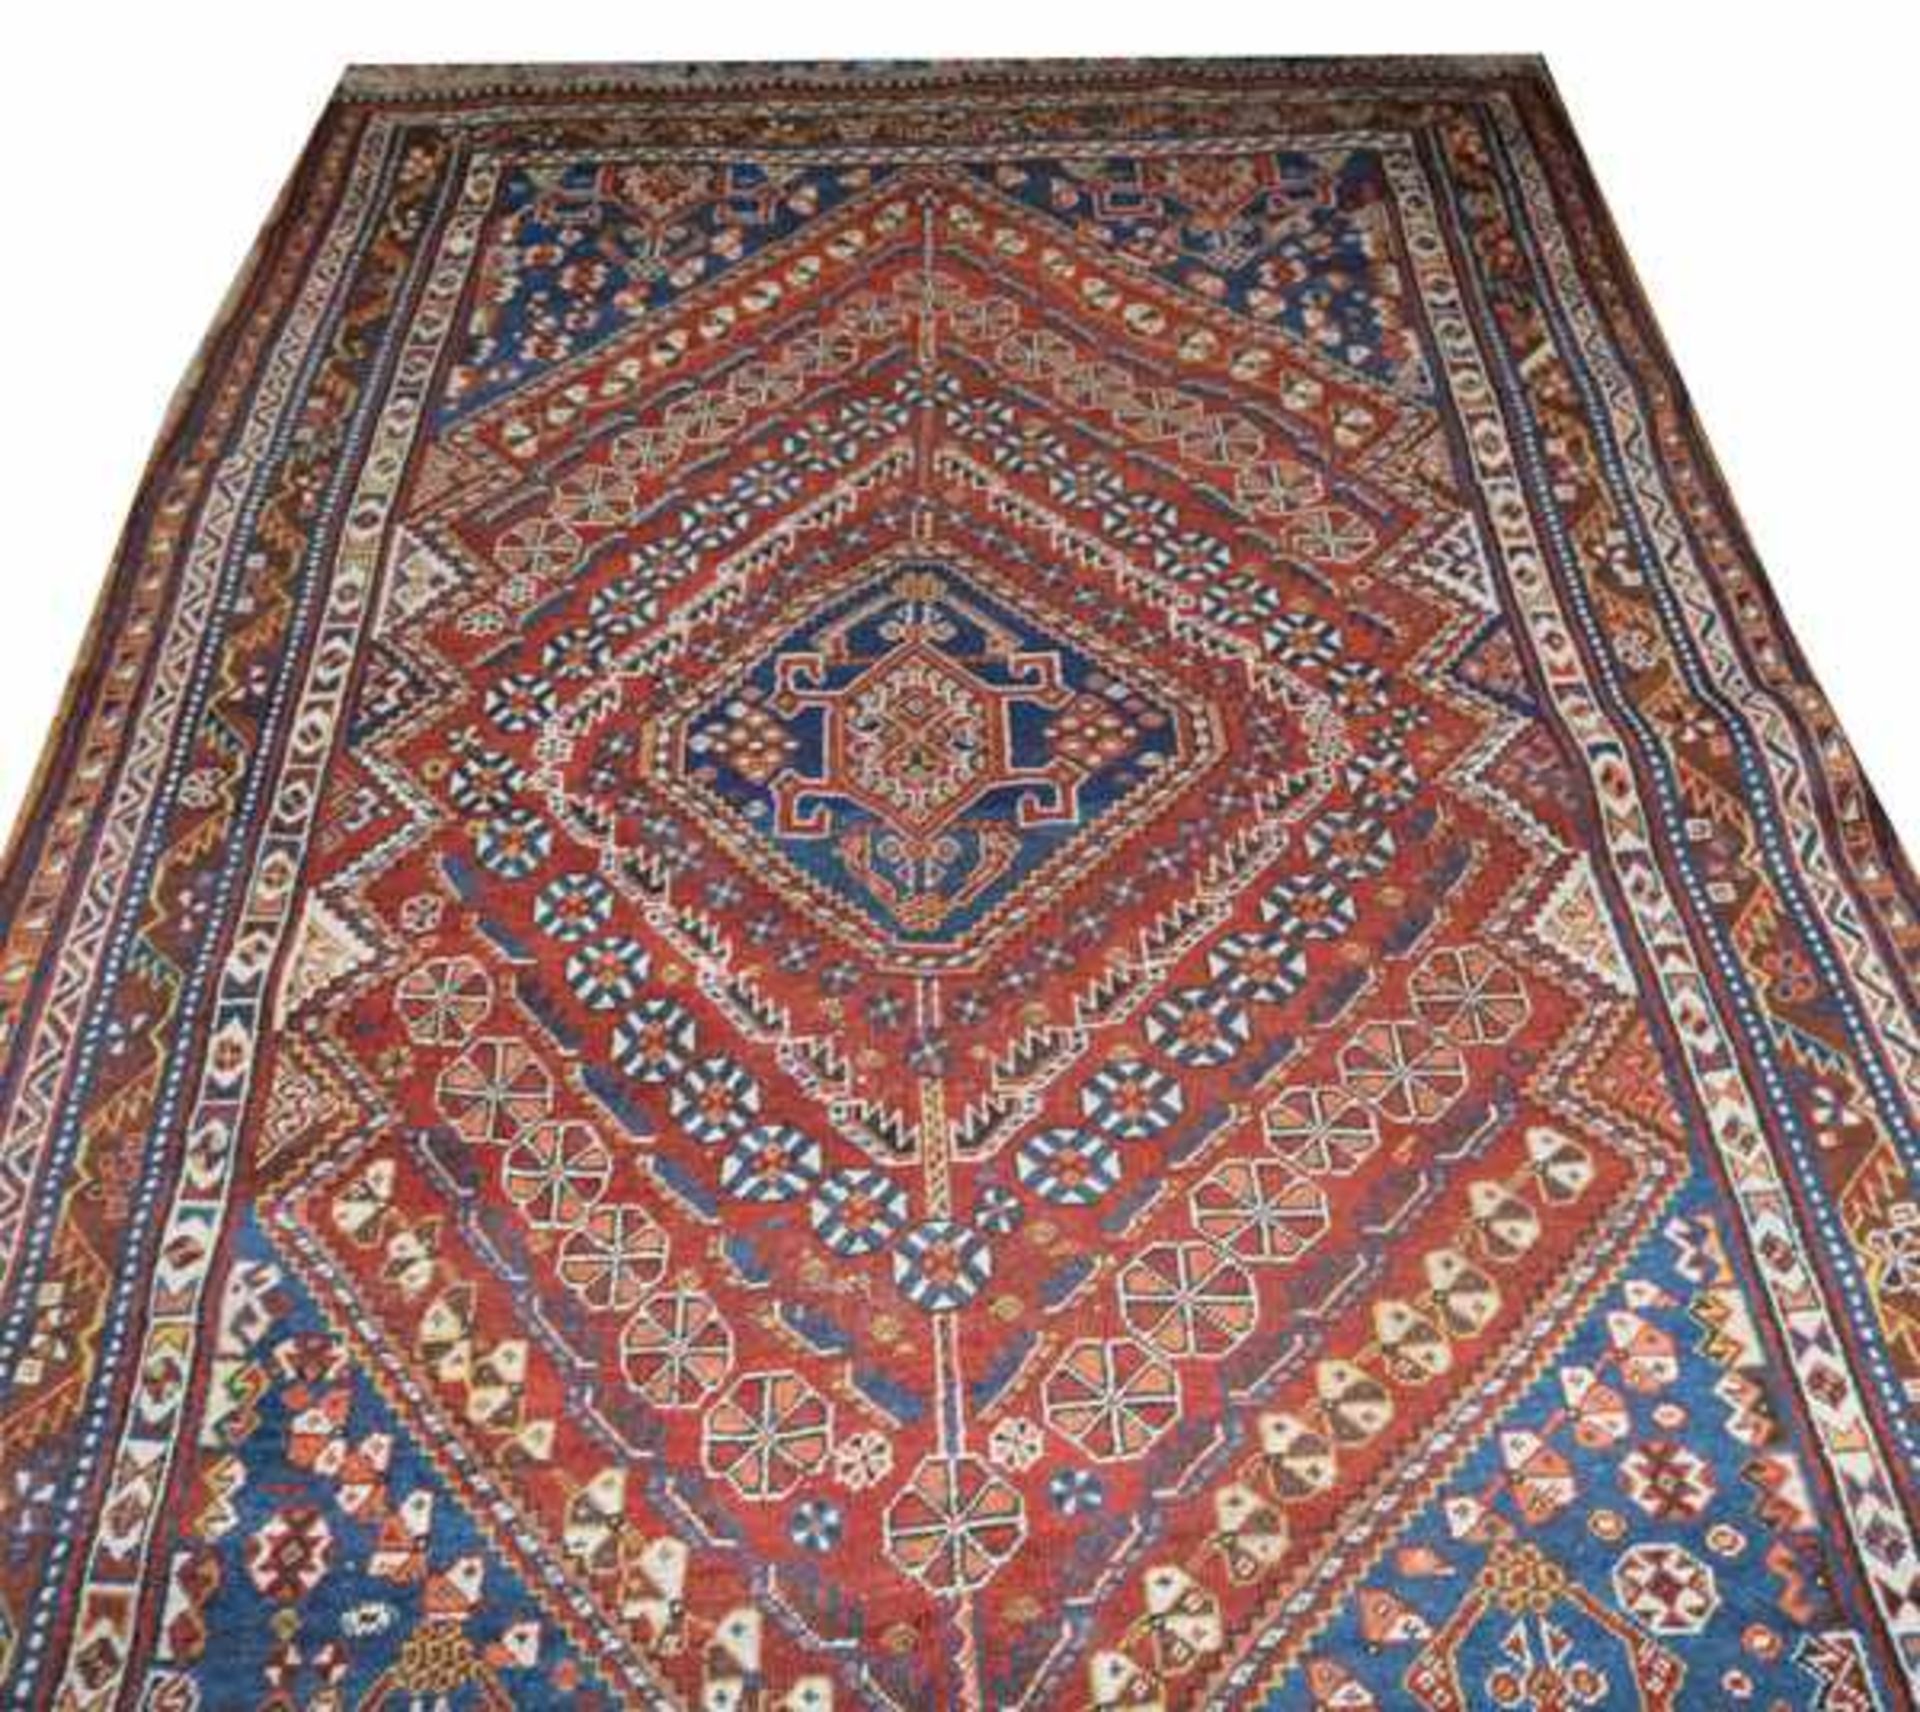 Teppich, Shiraz, blau/braun/beige, teils abgetreten und beschädigt, 259 cm x 162 cm